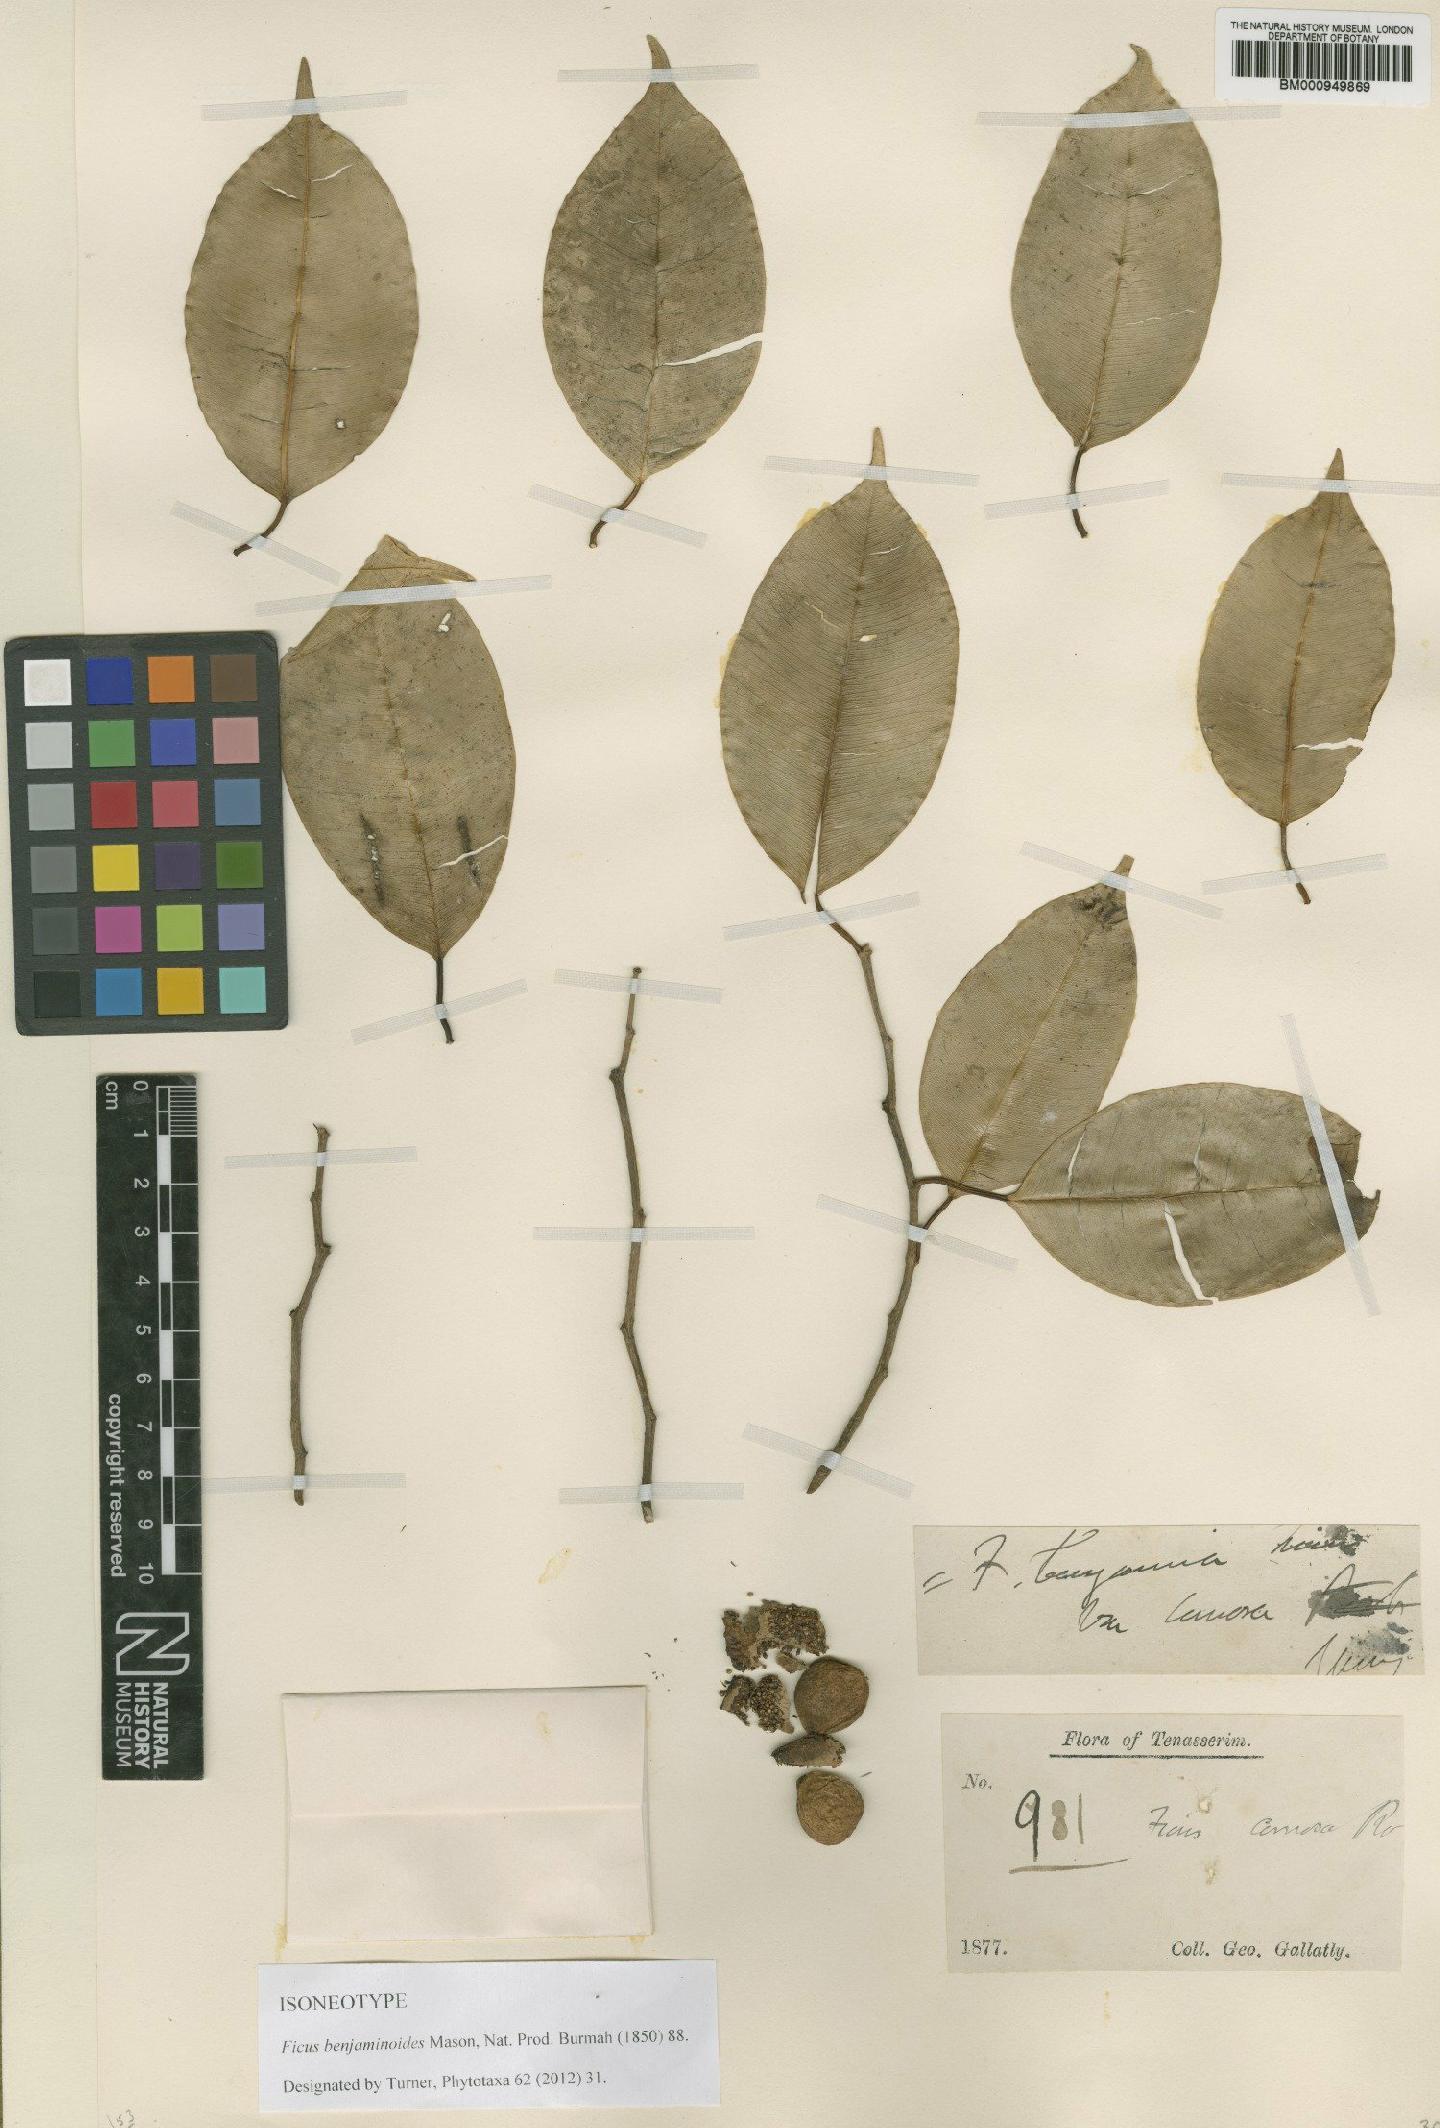 To NHMUK collection (Ficus benjamina L.; Isoneotype; NHMUK:ecatalogue:2477564)